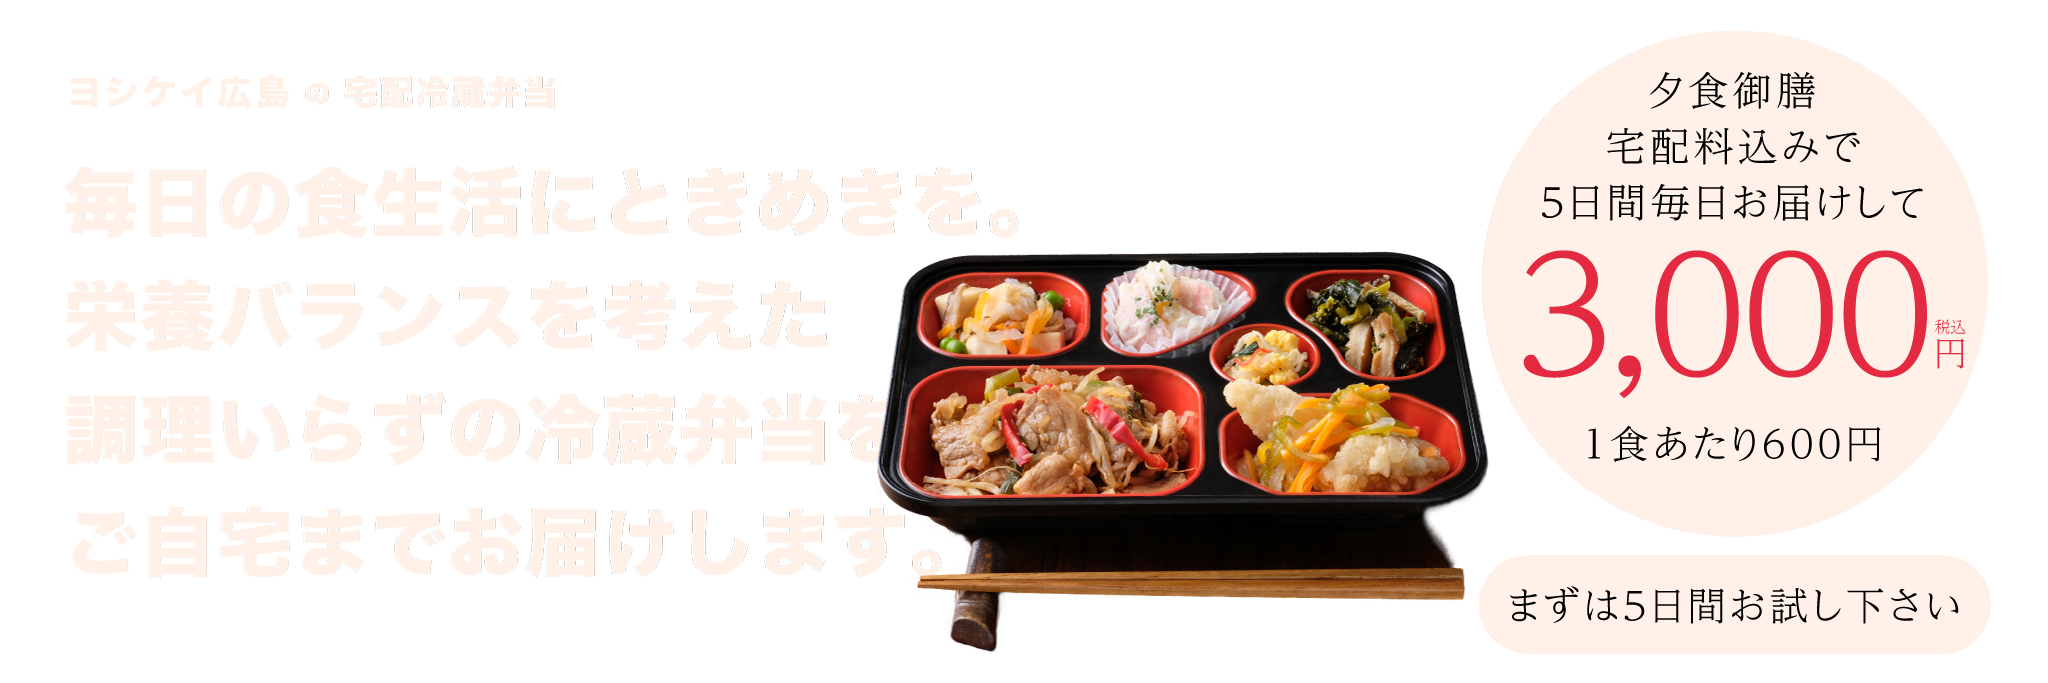 ヨシケイの宅配冷蔵弁当「夕食御膳」5日間お試し3,000円